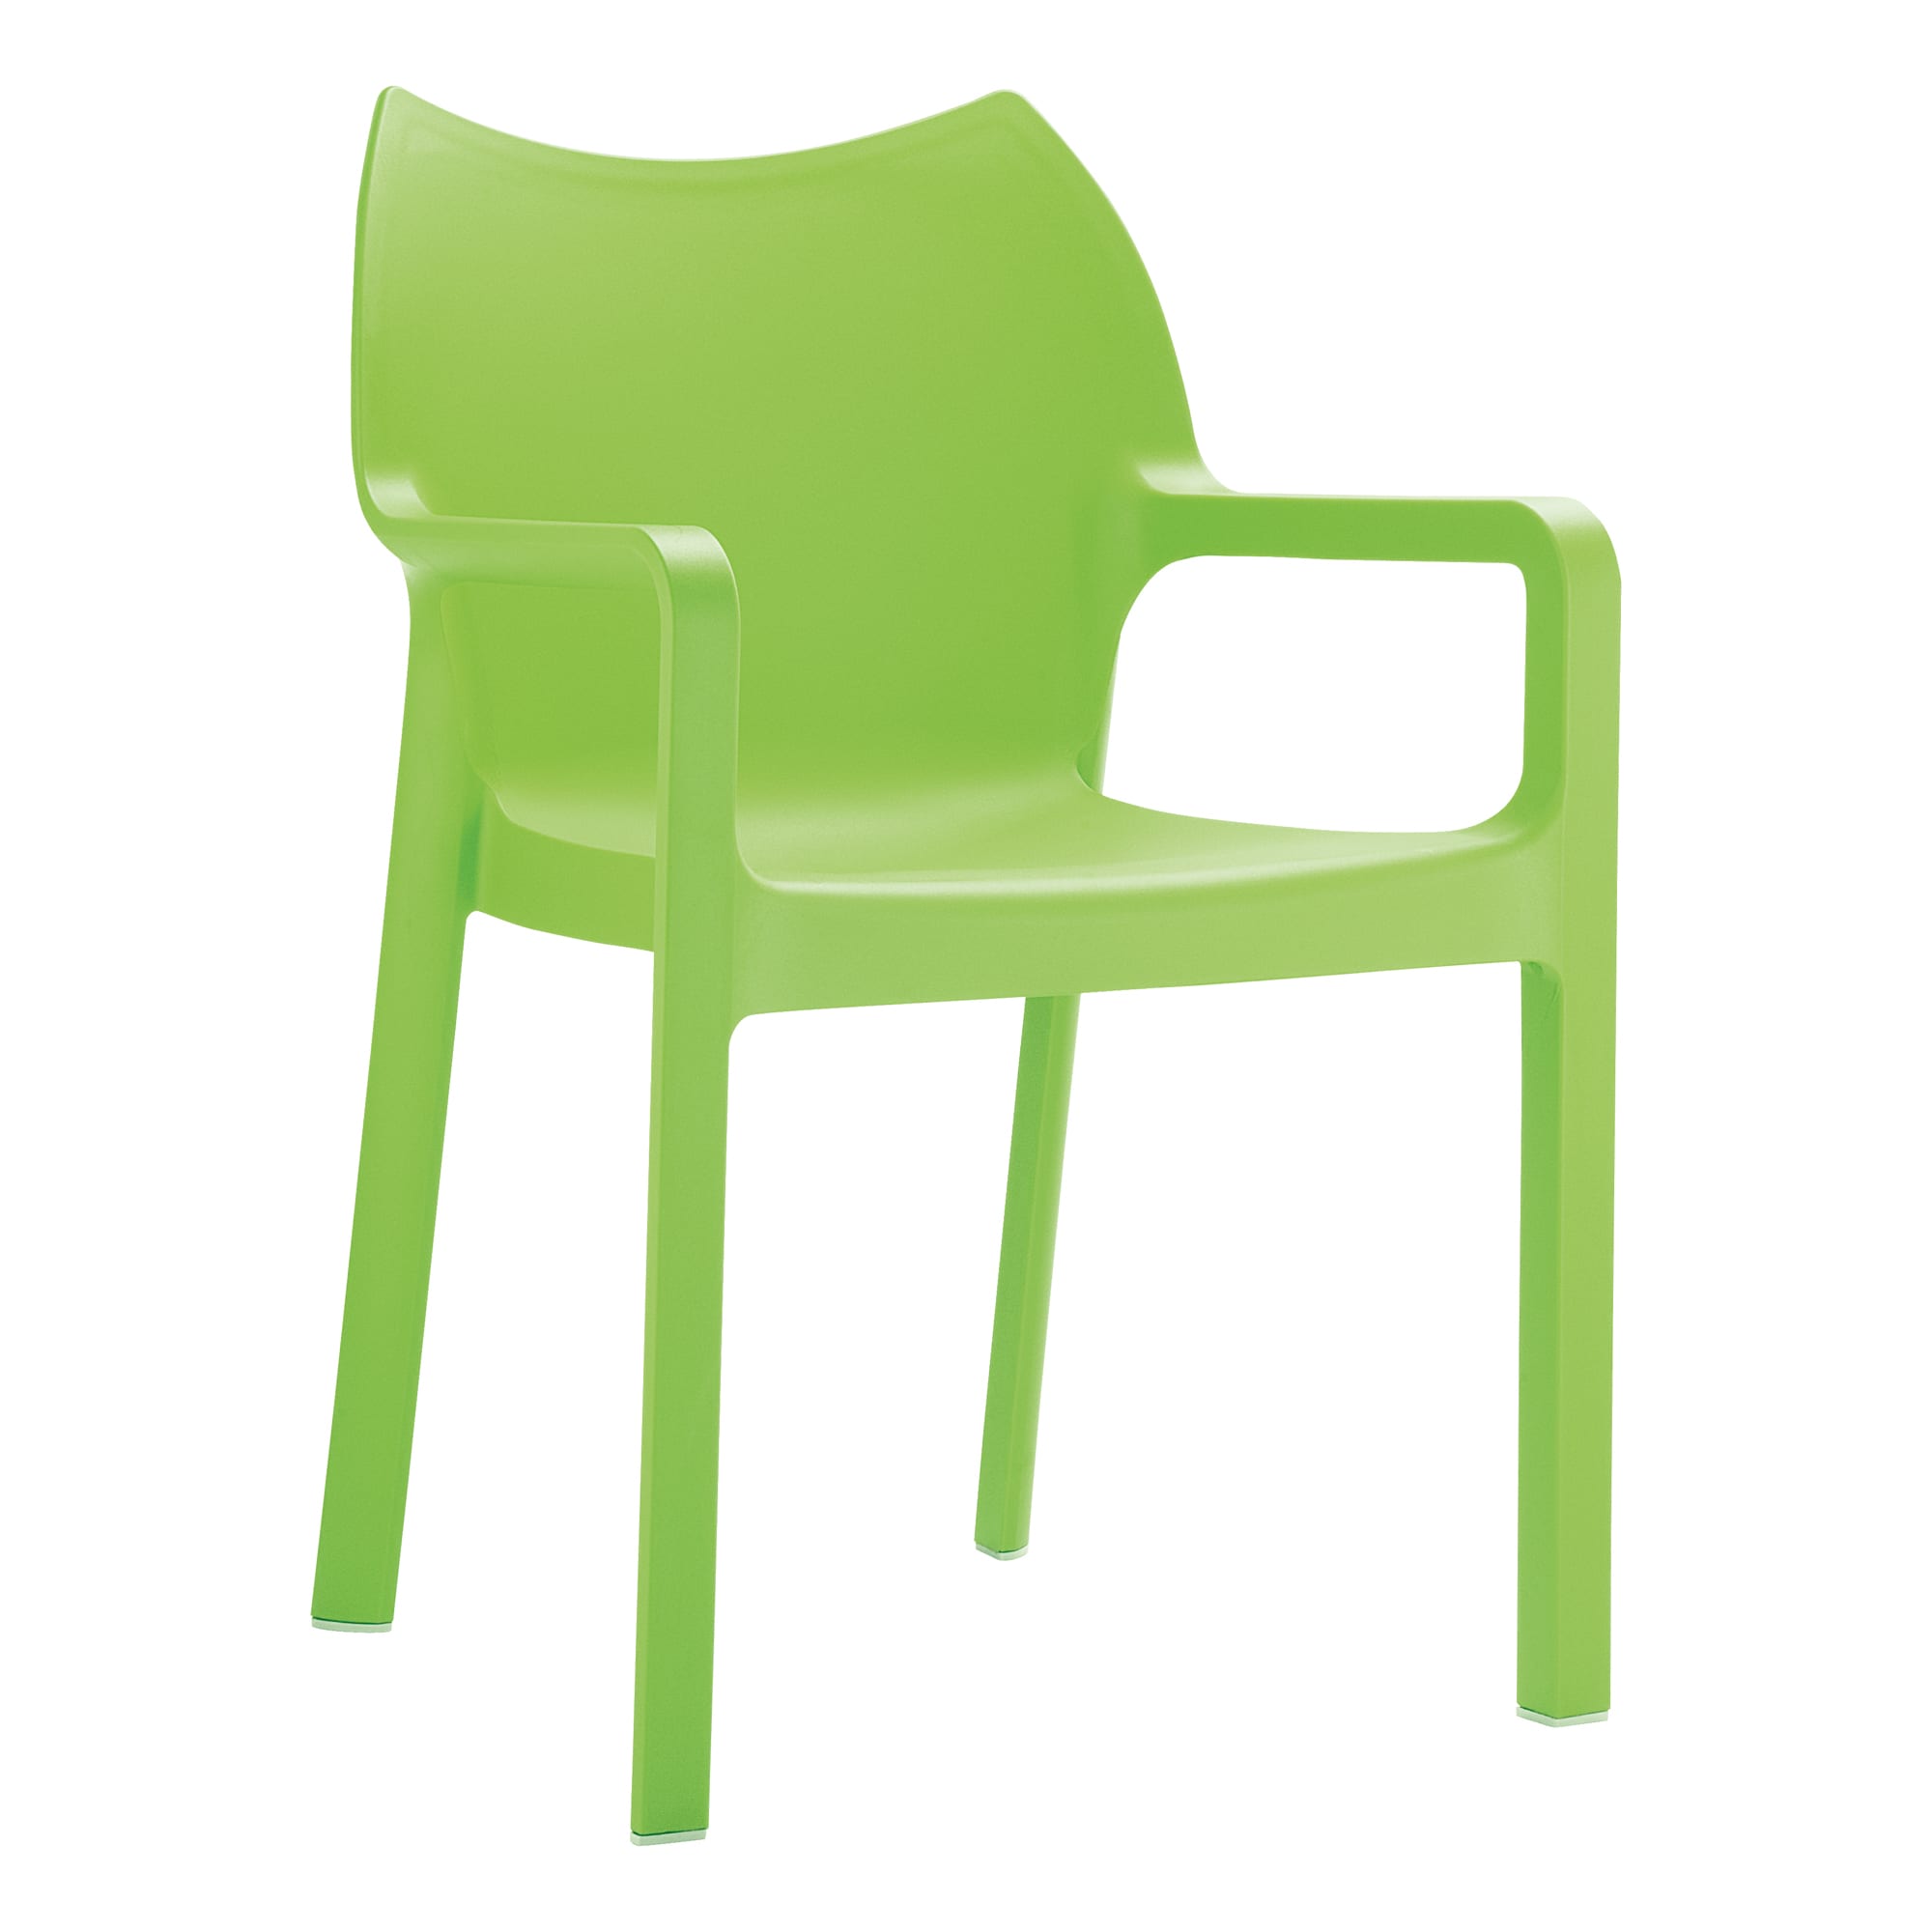 Beak Arm Chair - Tropical Green